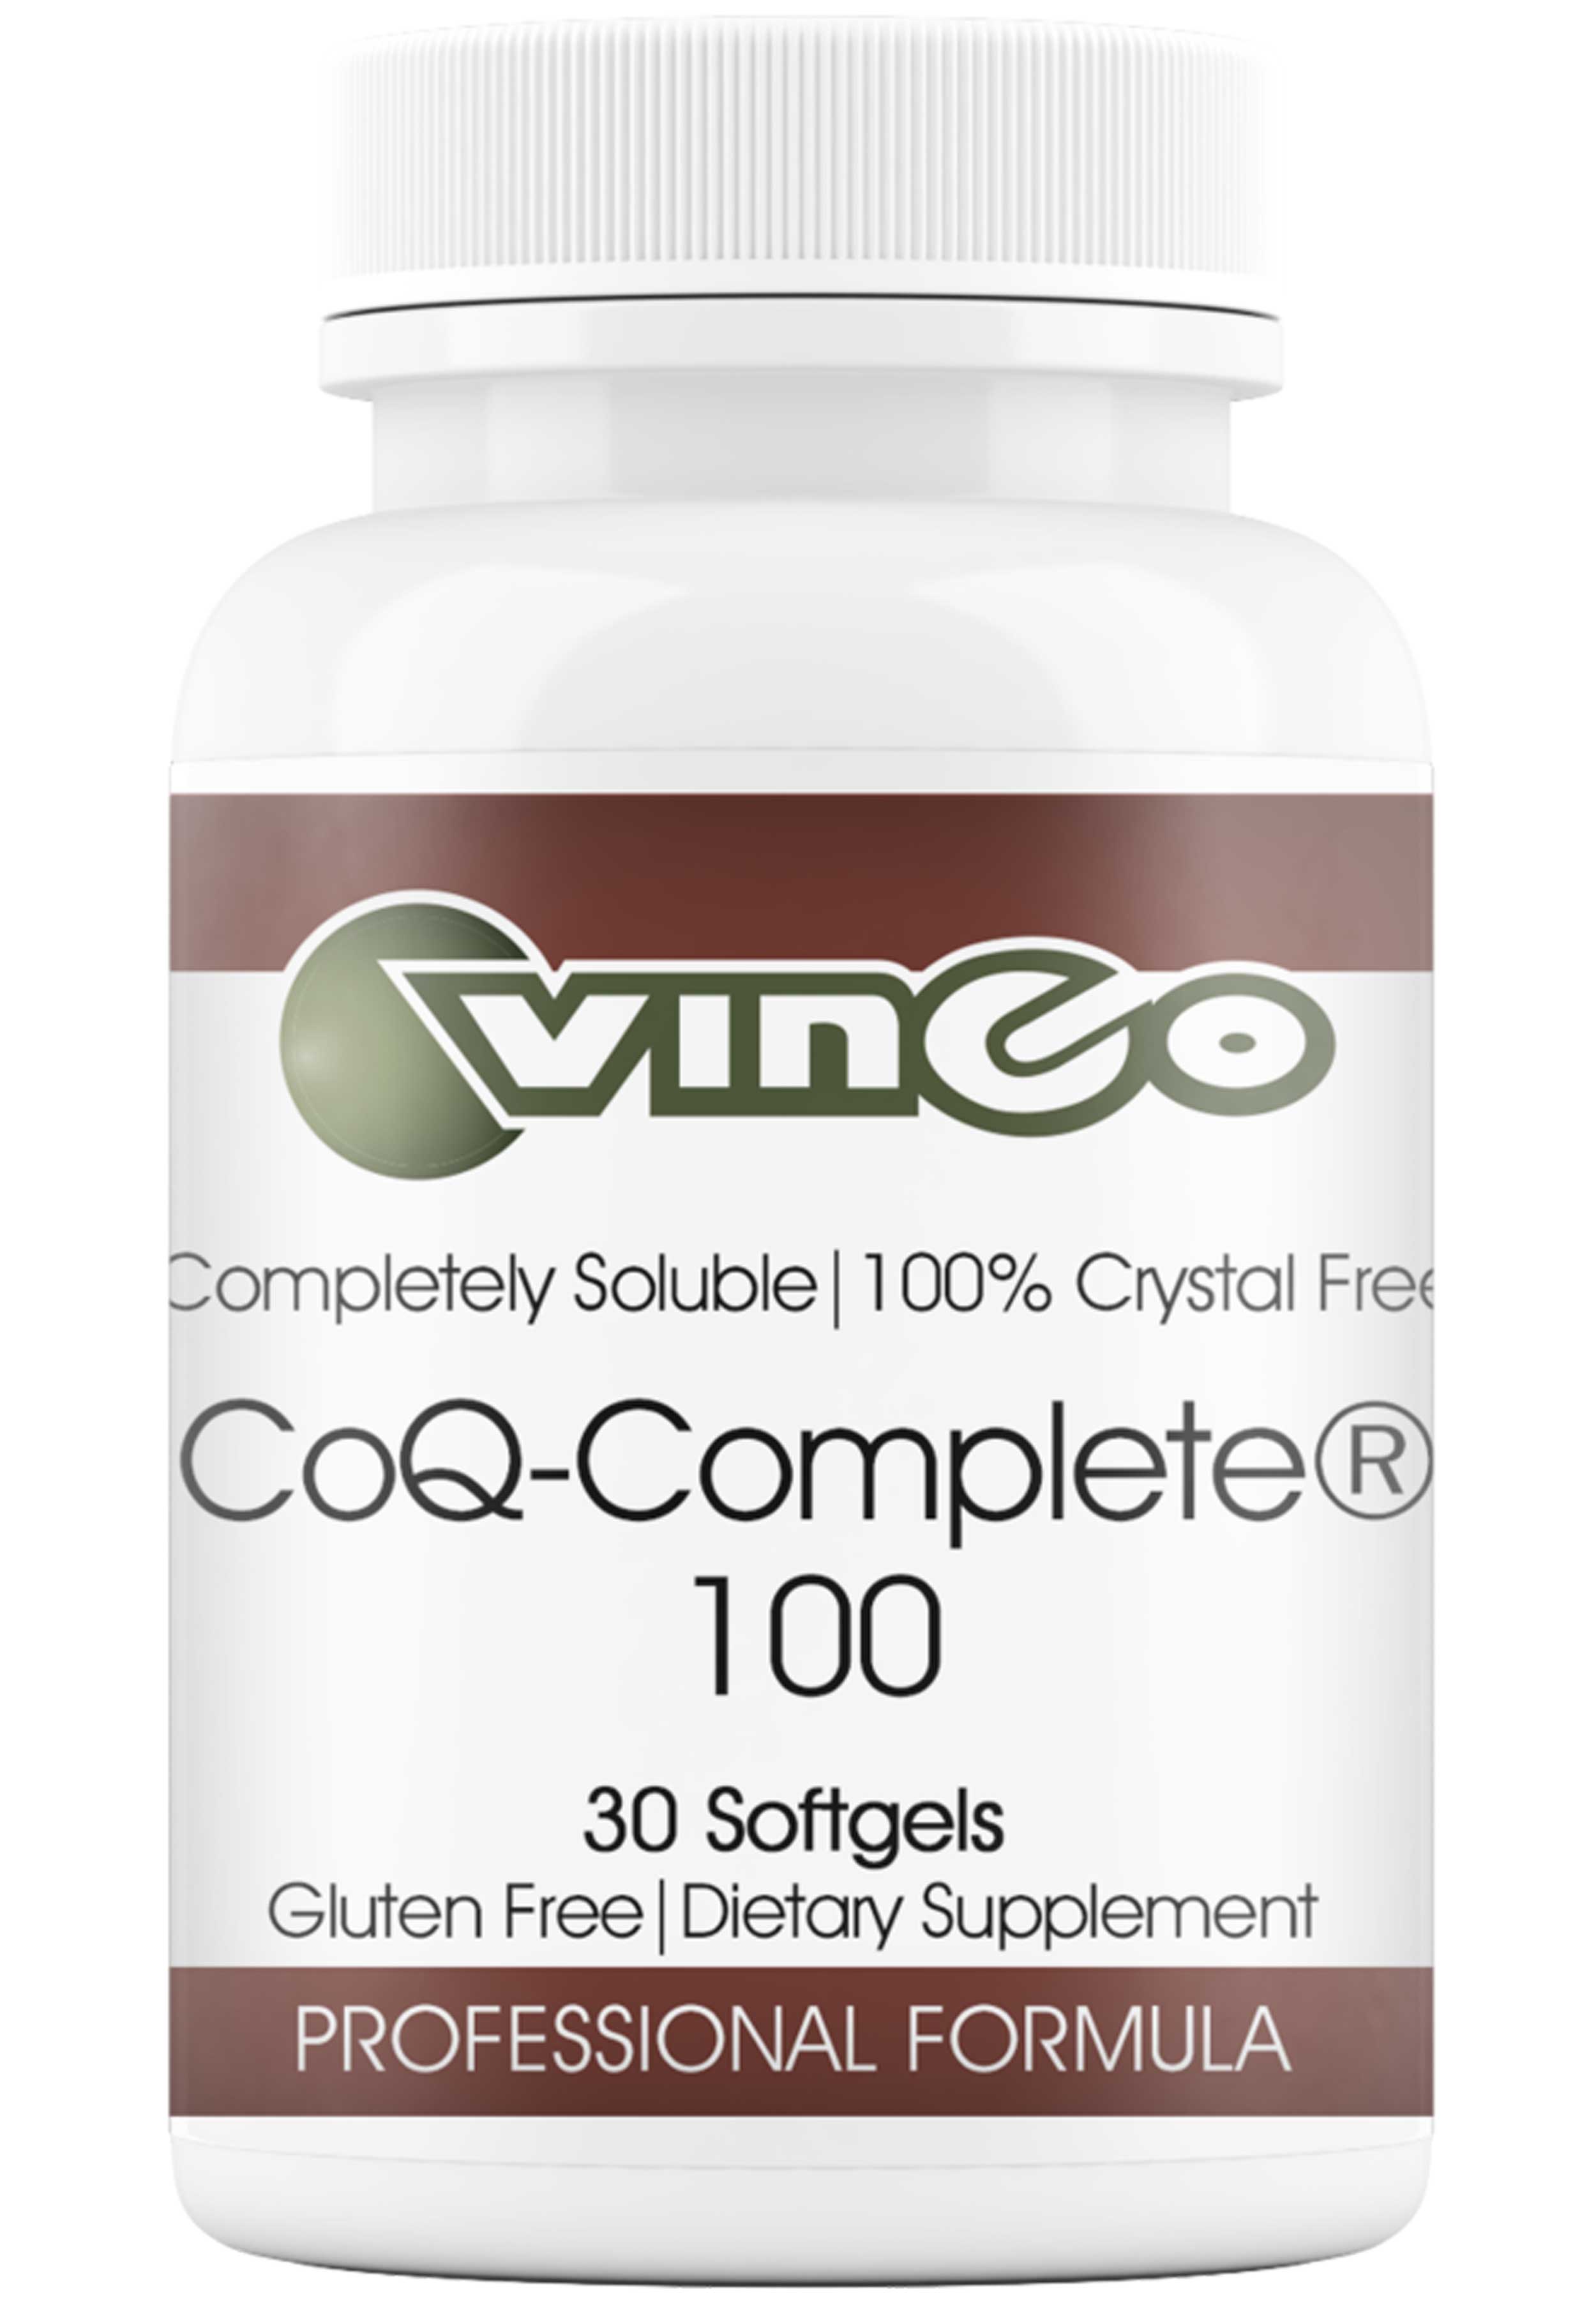 Vinco CoQ-Complete® 100